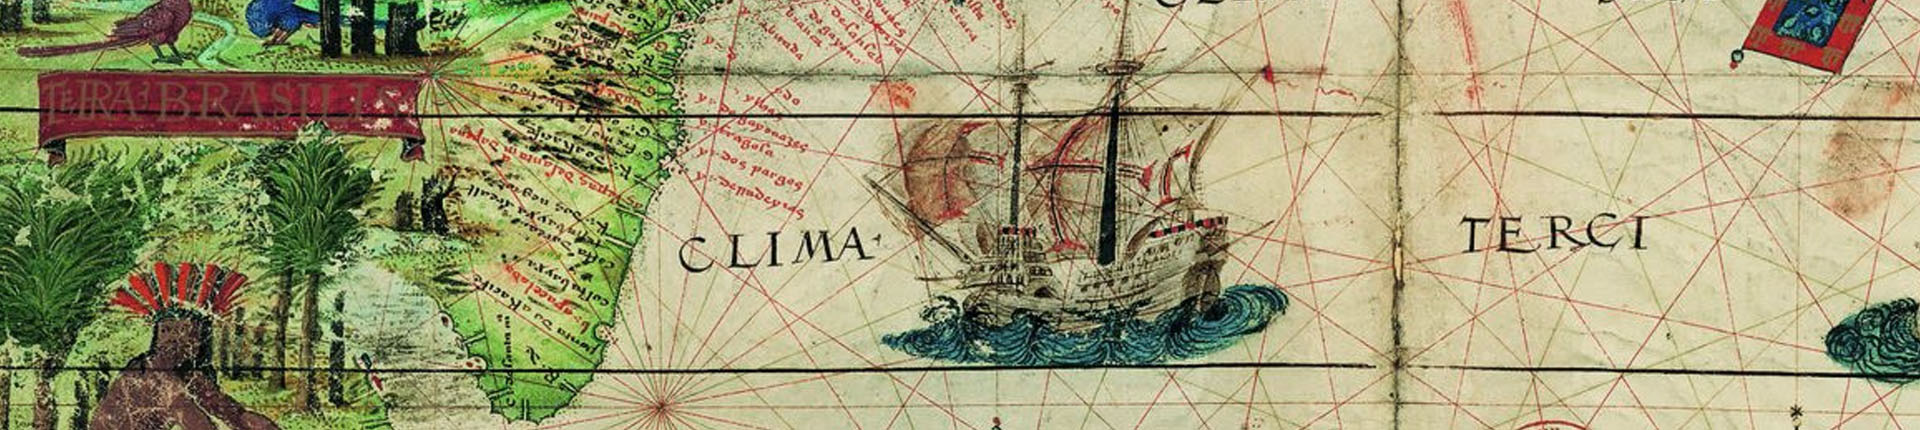 Descubriendo el mundo: Magallanes y Elcano